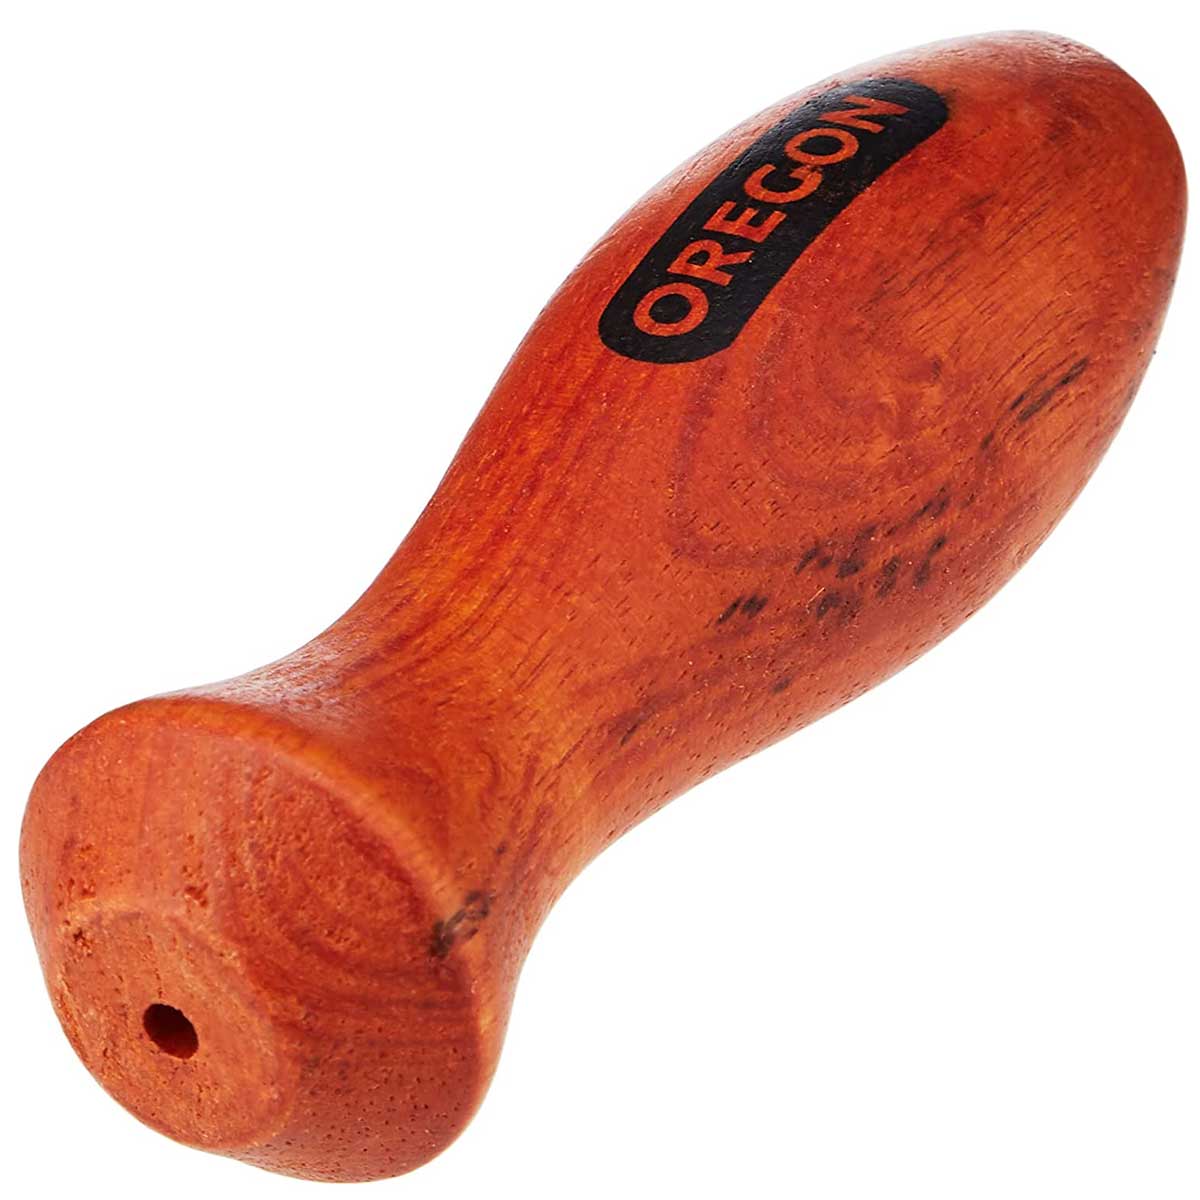 Oregon wooden file handle